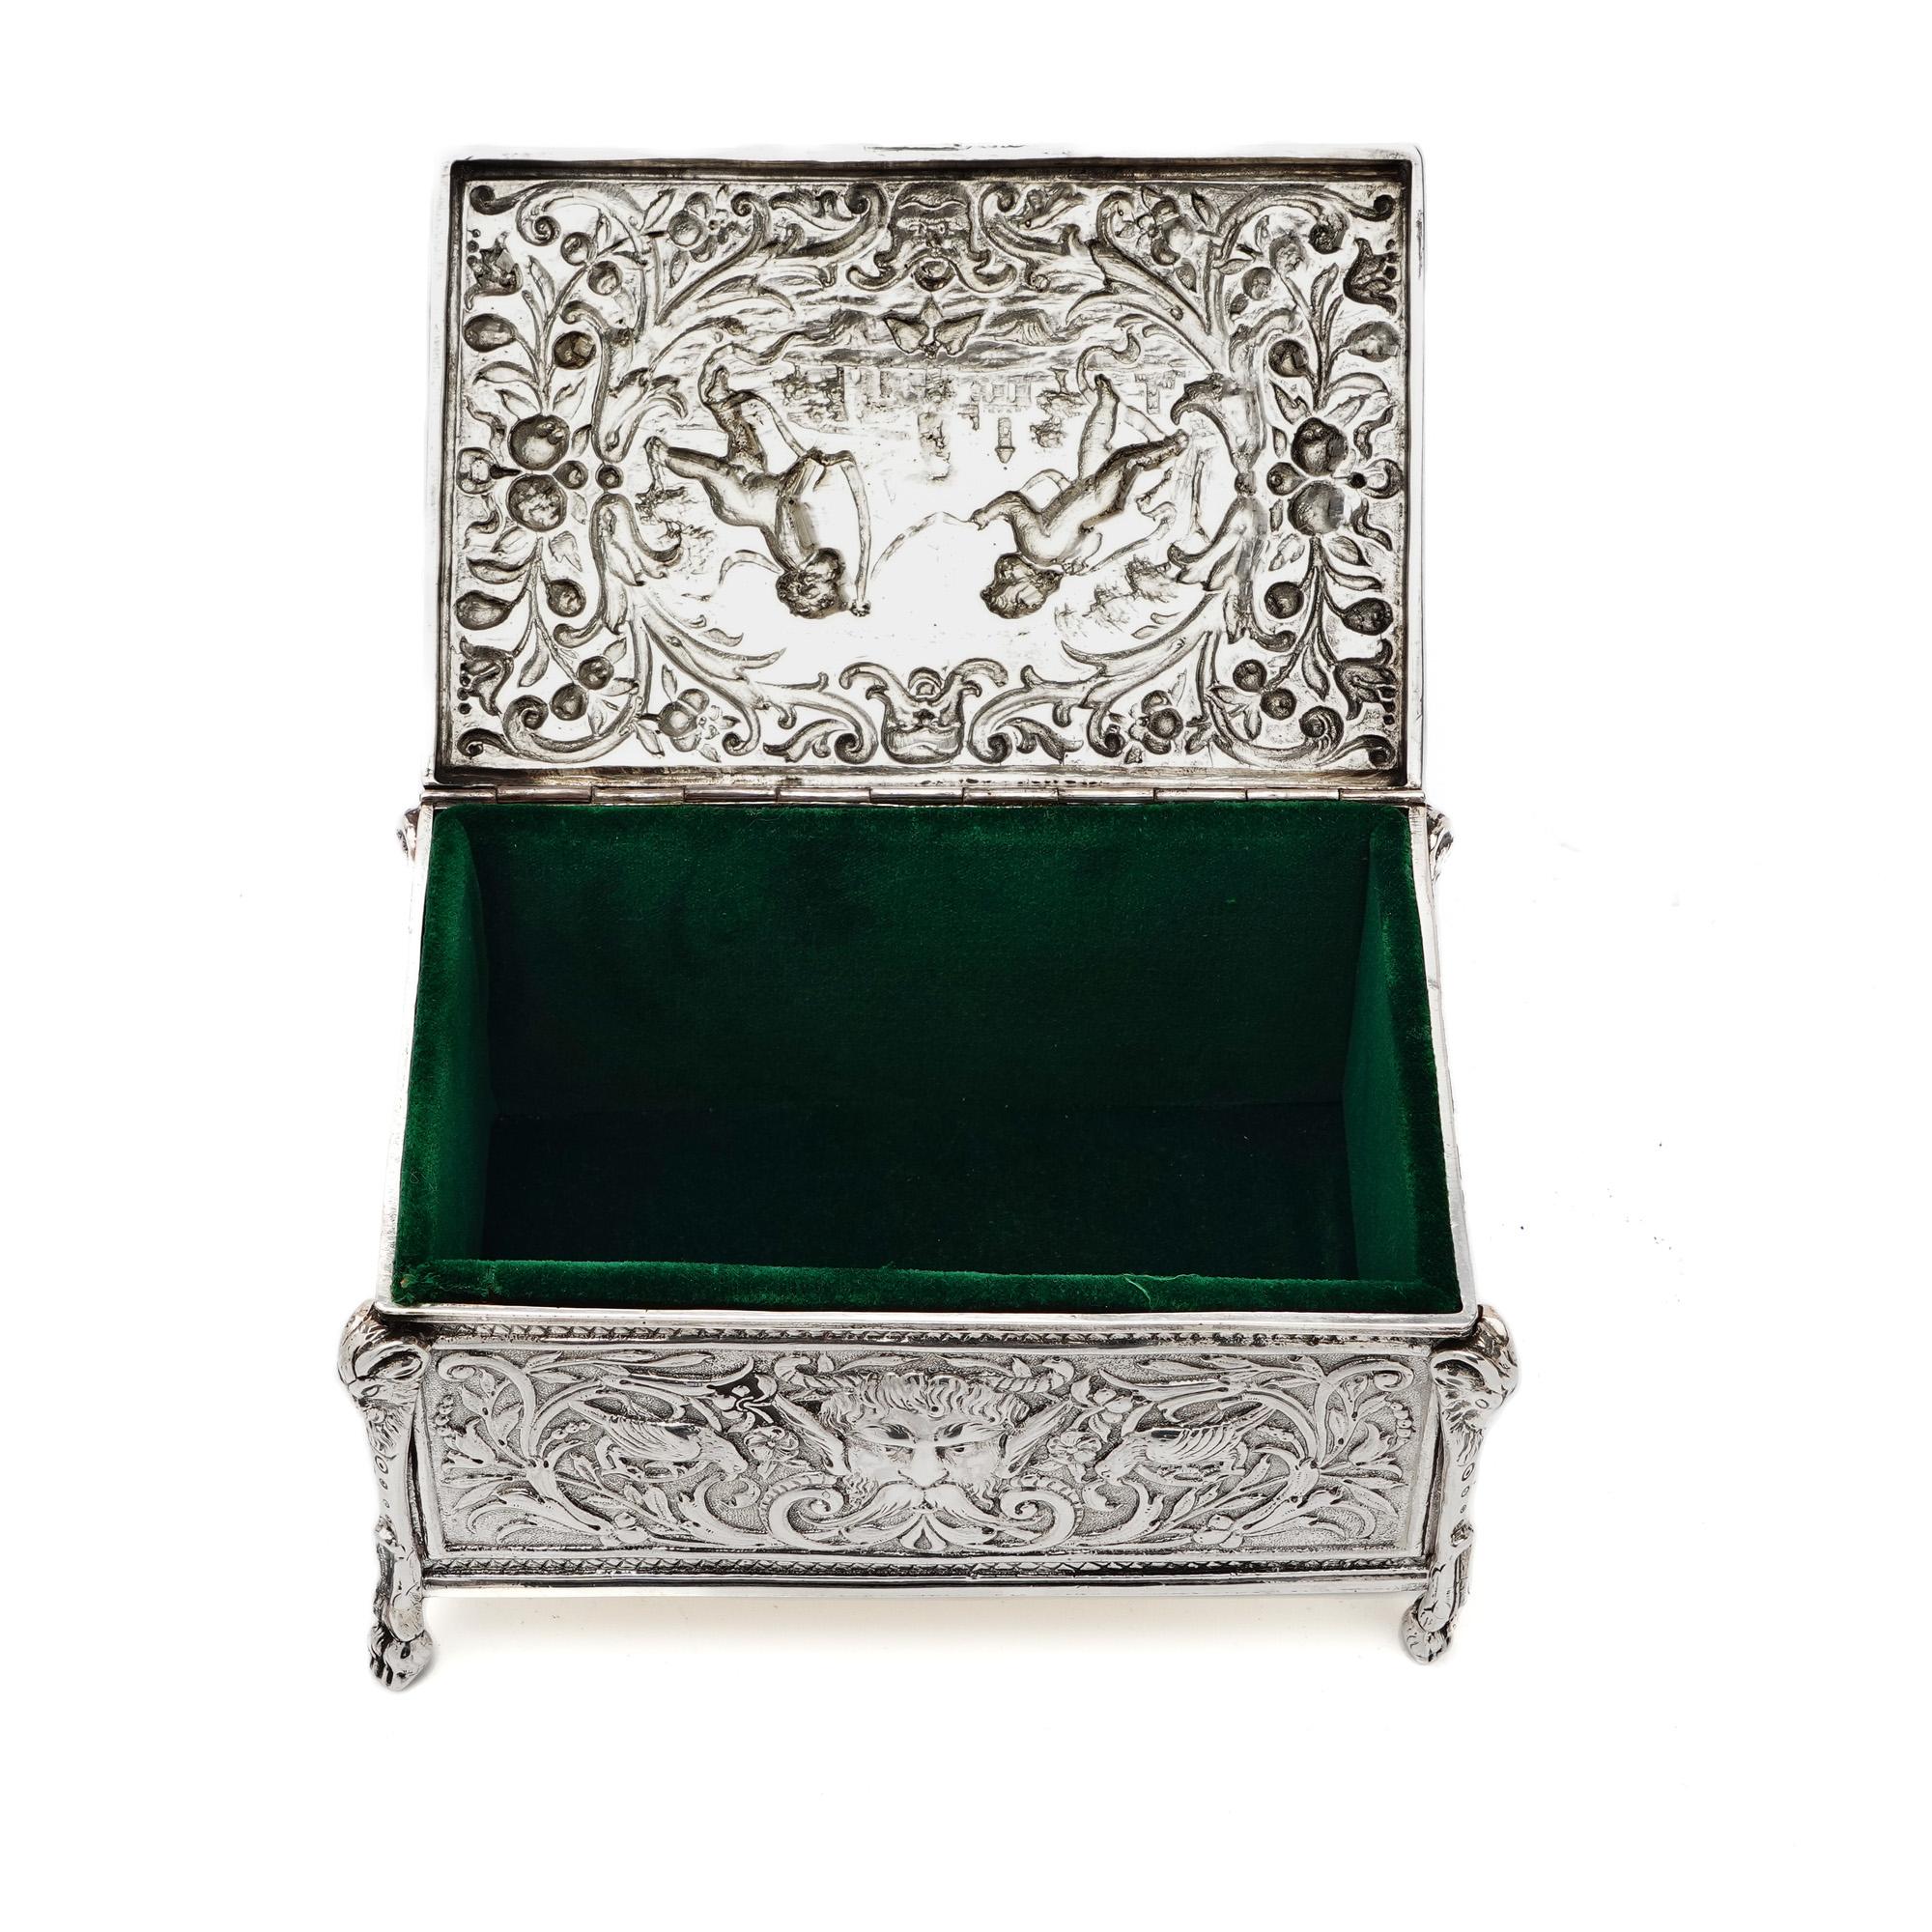 antique silver jewlery box